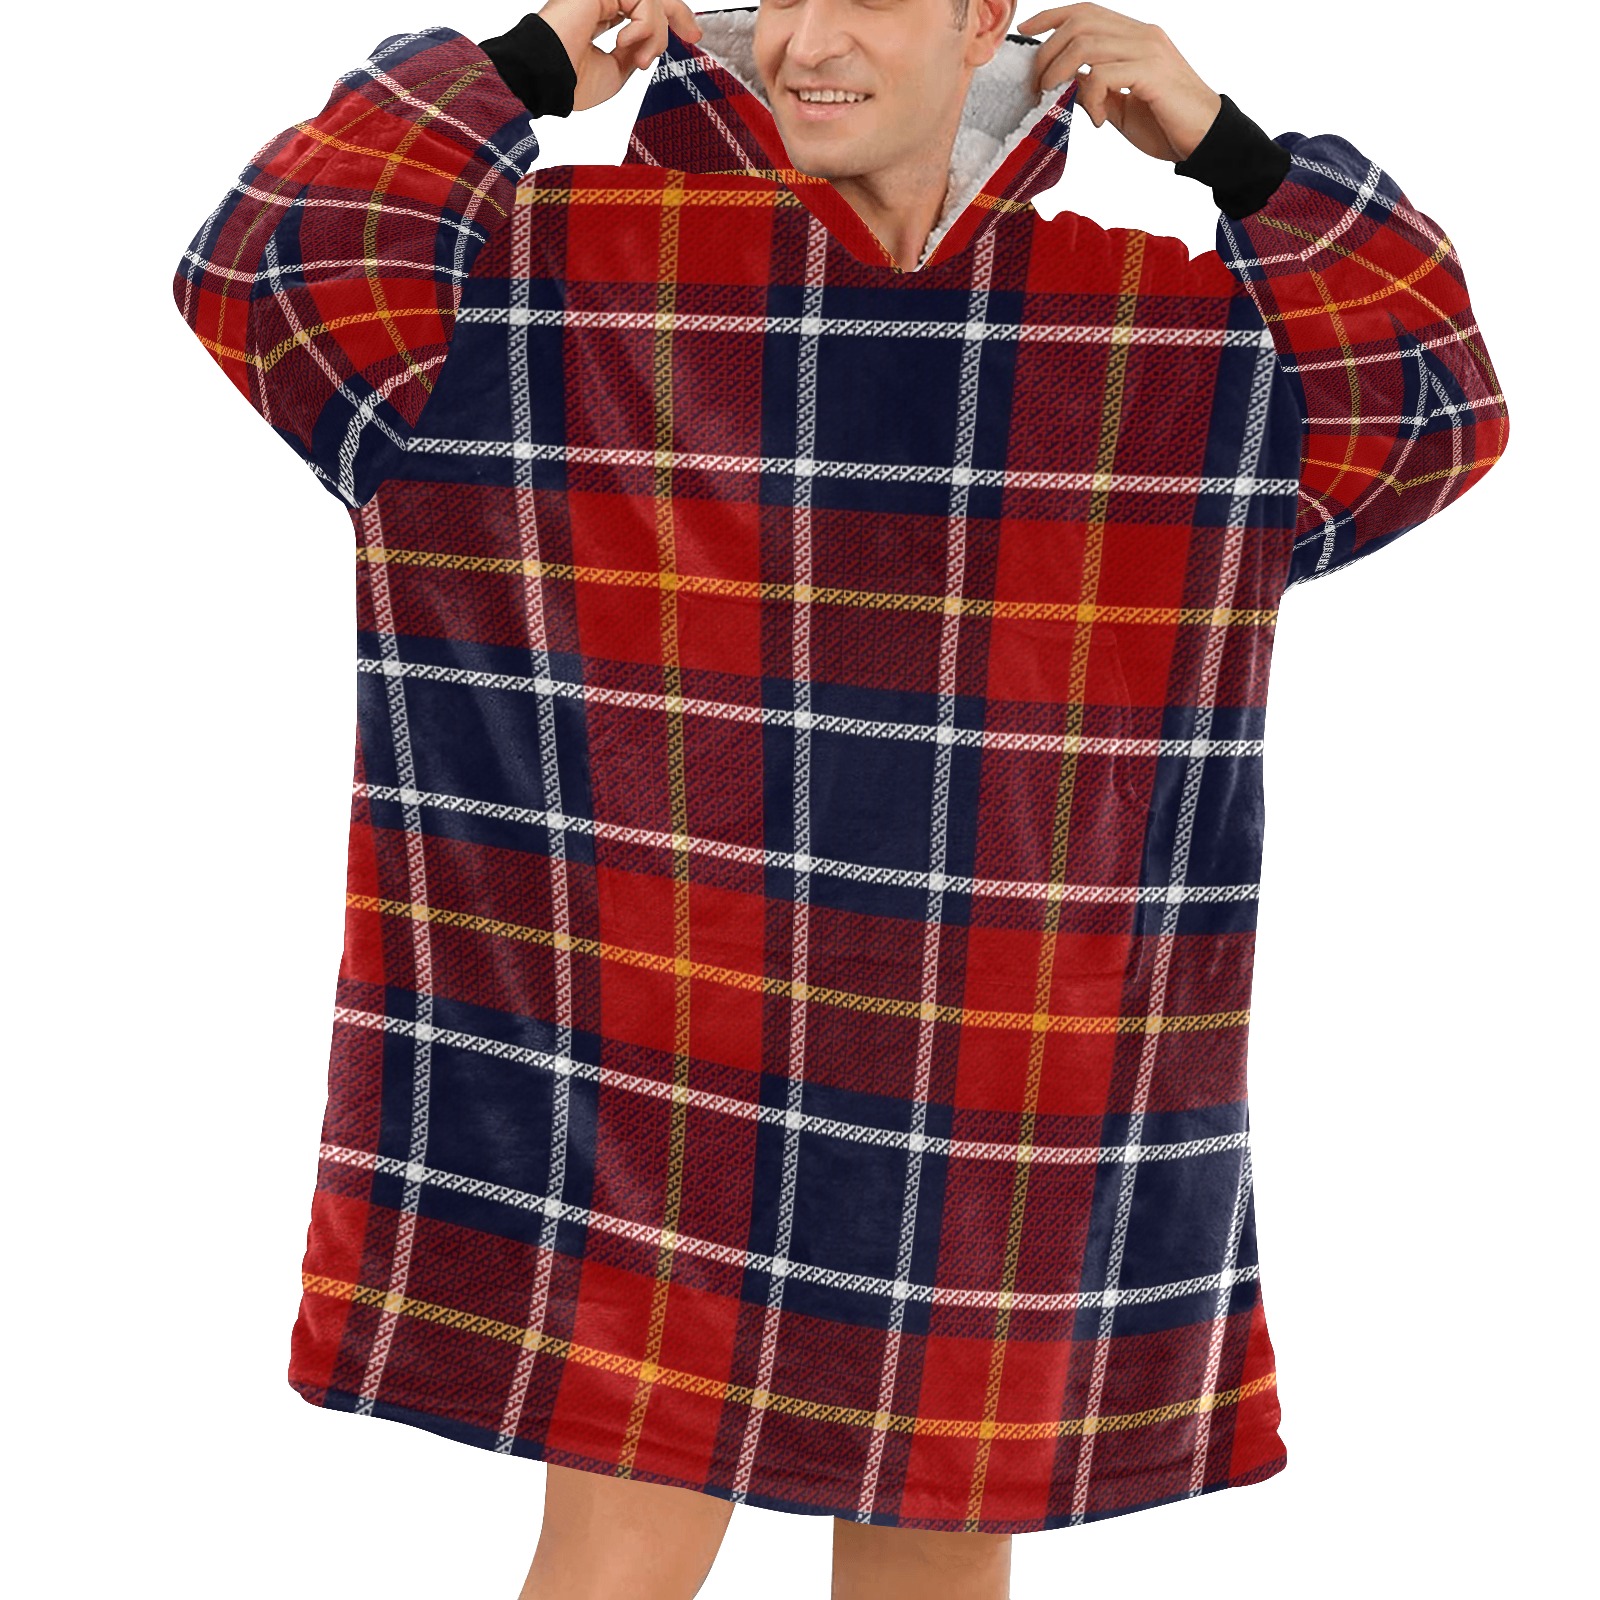 Red Tartan Plaid Blanket Hoodie for Men